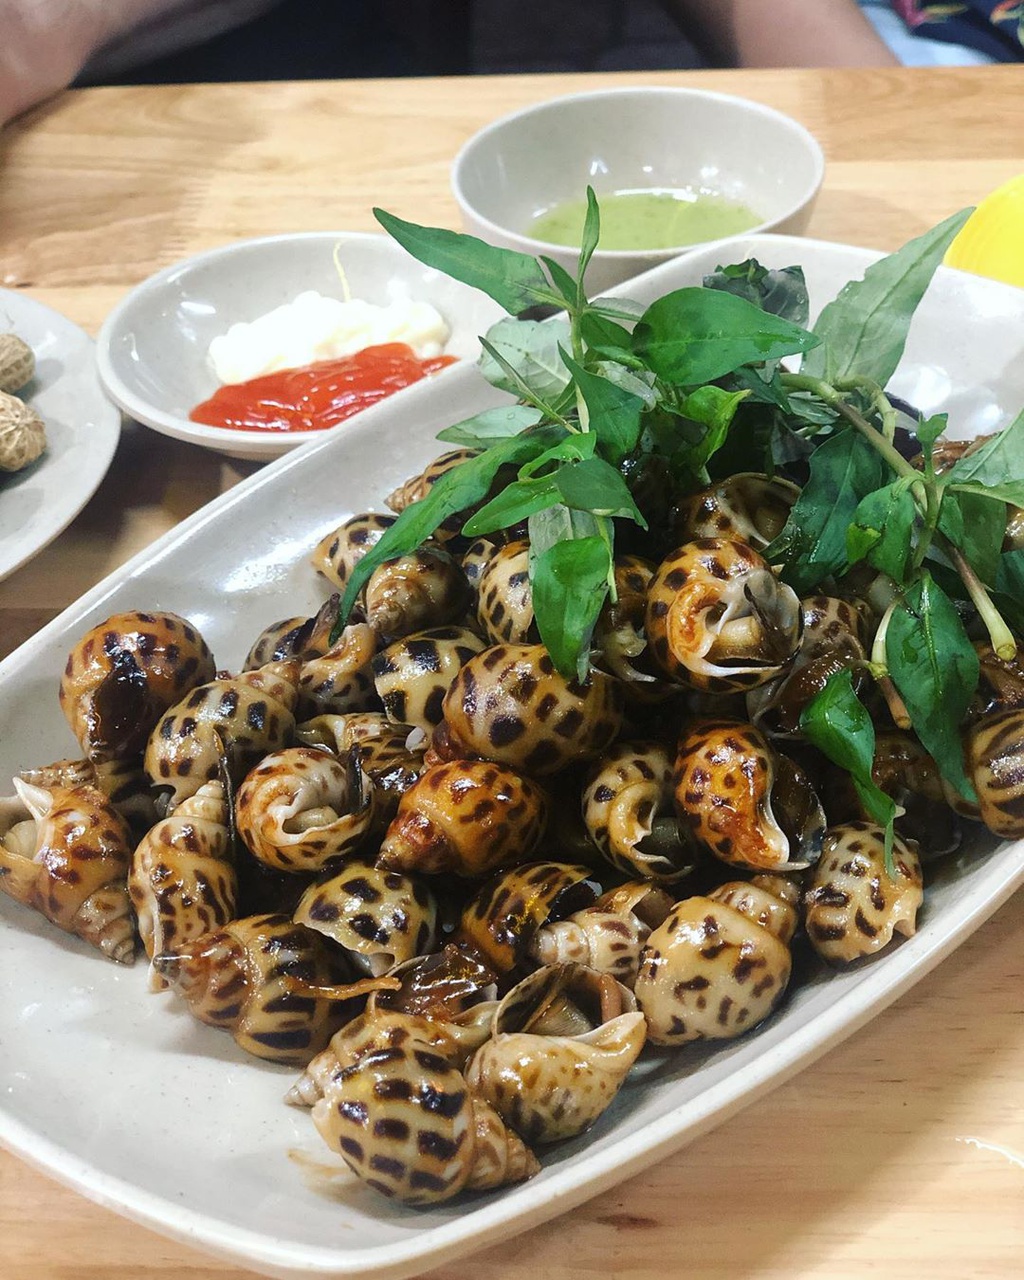 4 địa chỉ ăn hải sản ngon, giá bình dân ở Nha Trang